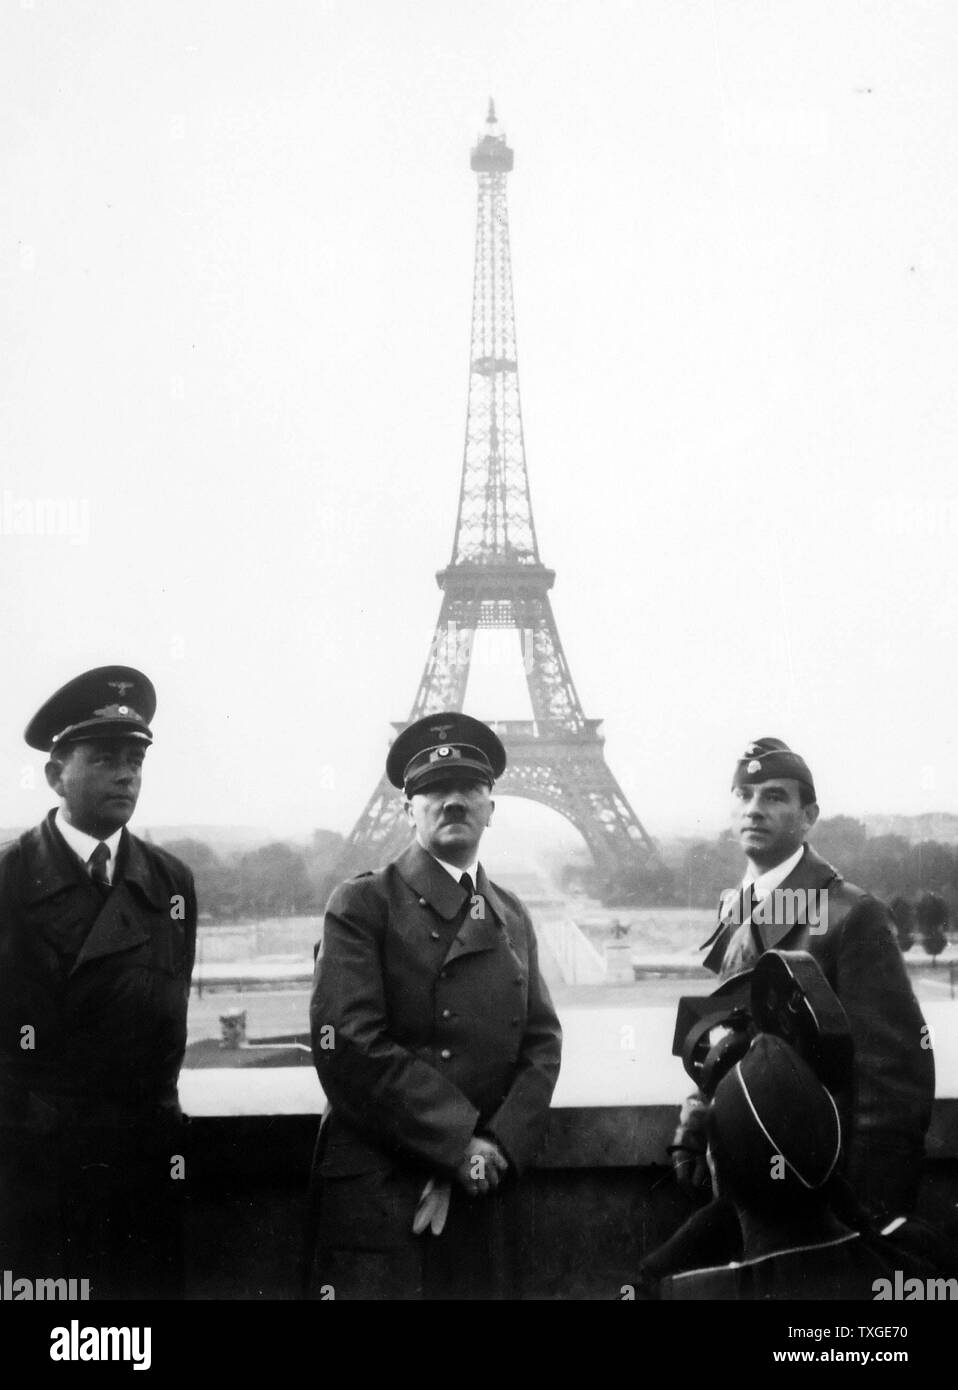 Foto von Adolf Hitler in Paris mit dem Eiffelturm im Hintergrund. Datiert 1940 Stockfoto